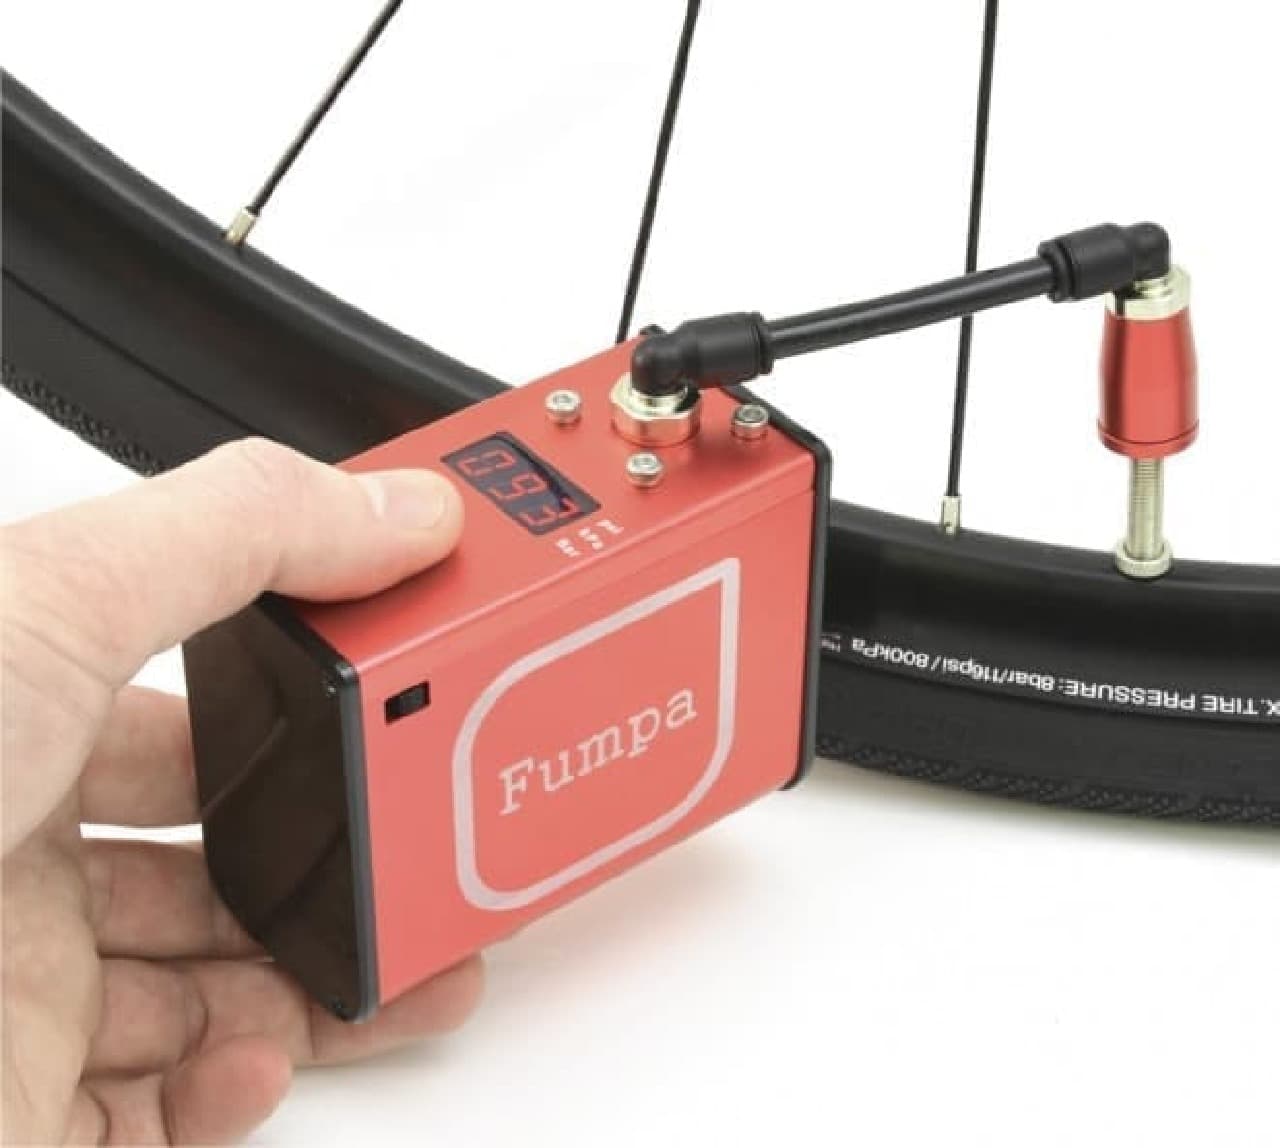 ポケットに入る自転車用の電動空気入れ「miniFumpa」